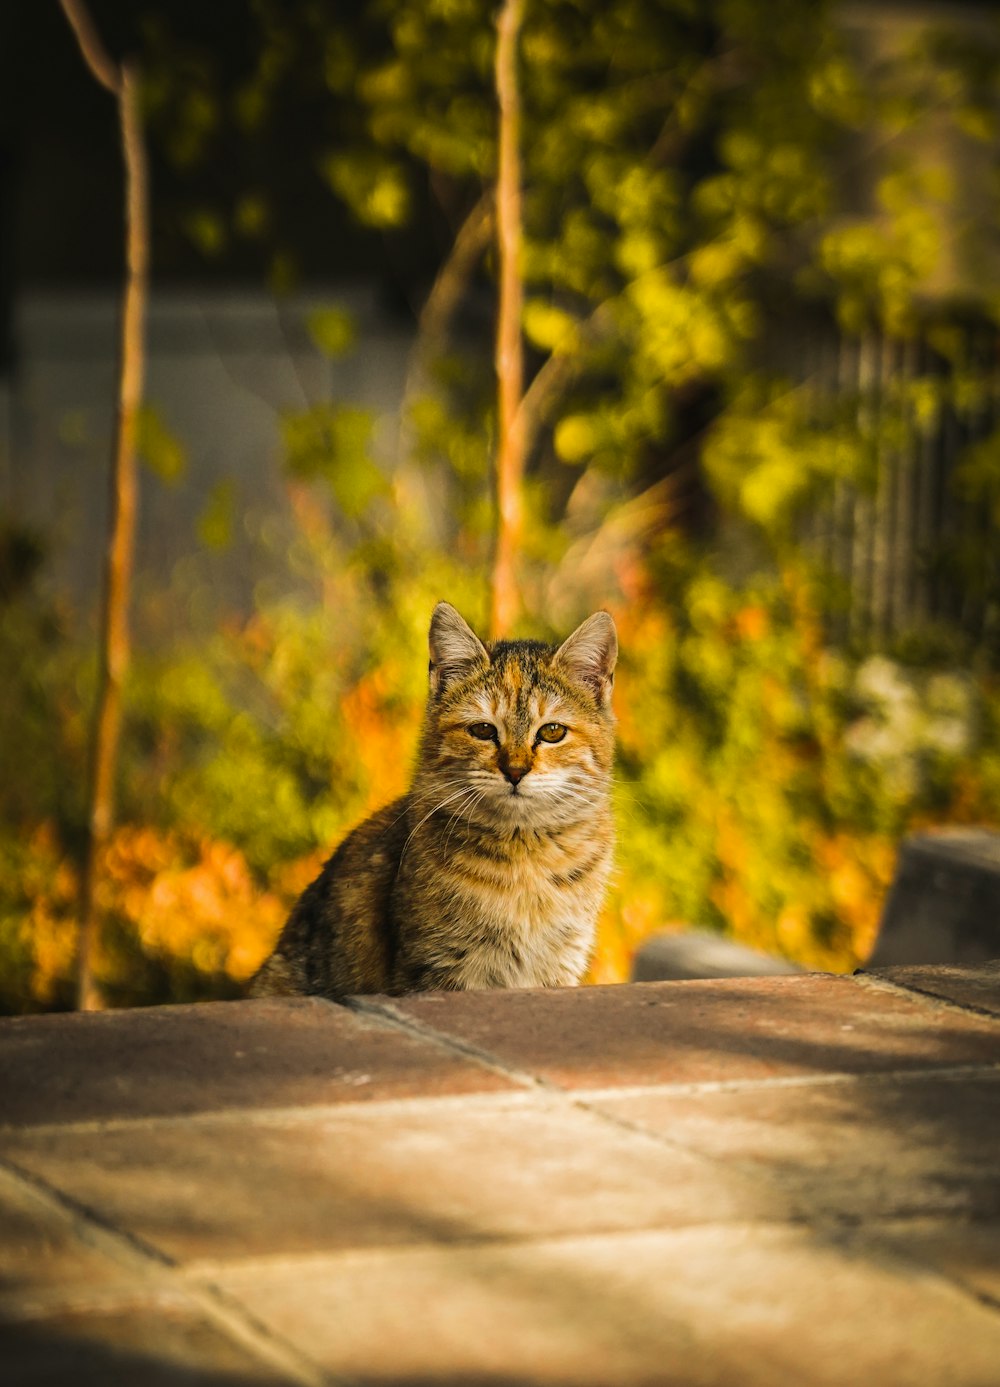 gato tabby marrom sentado na superfície de concreto marrom durante o dia